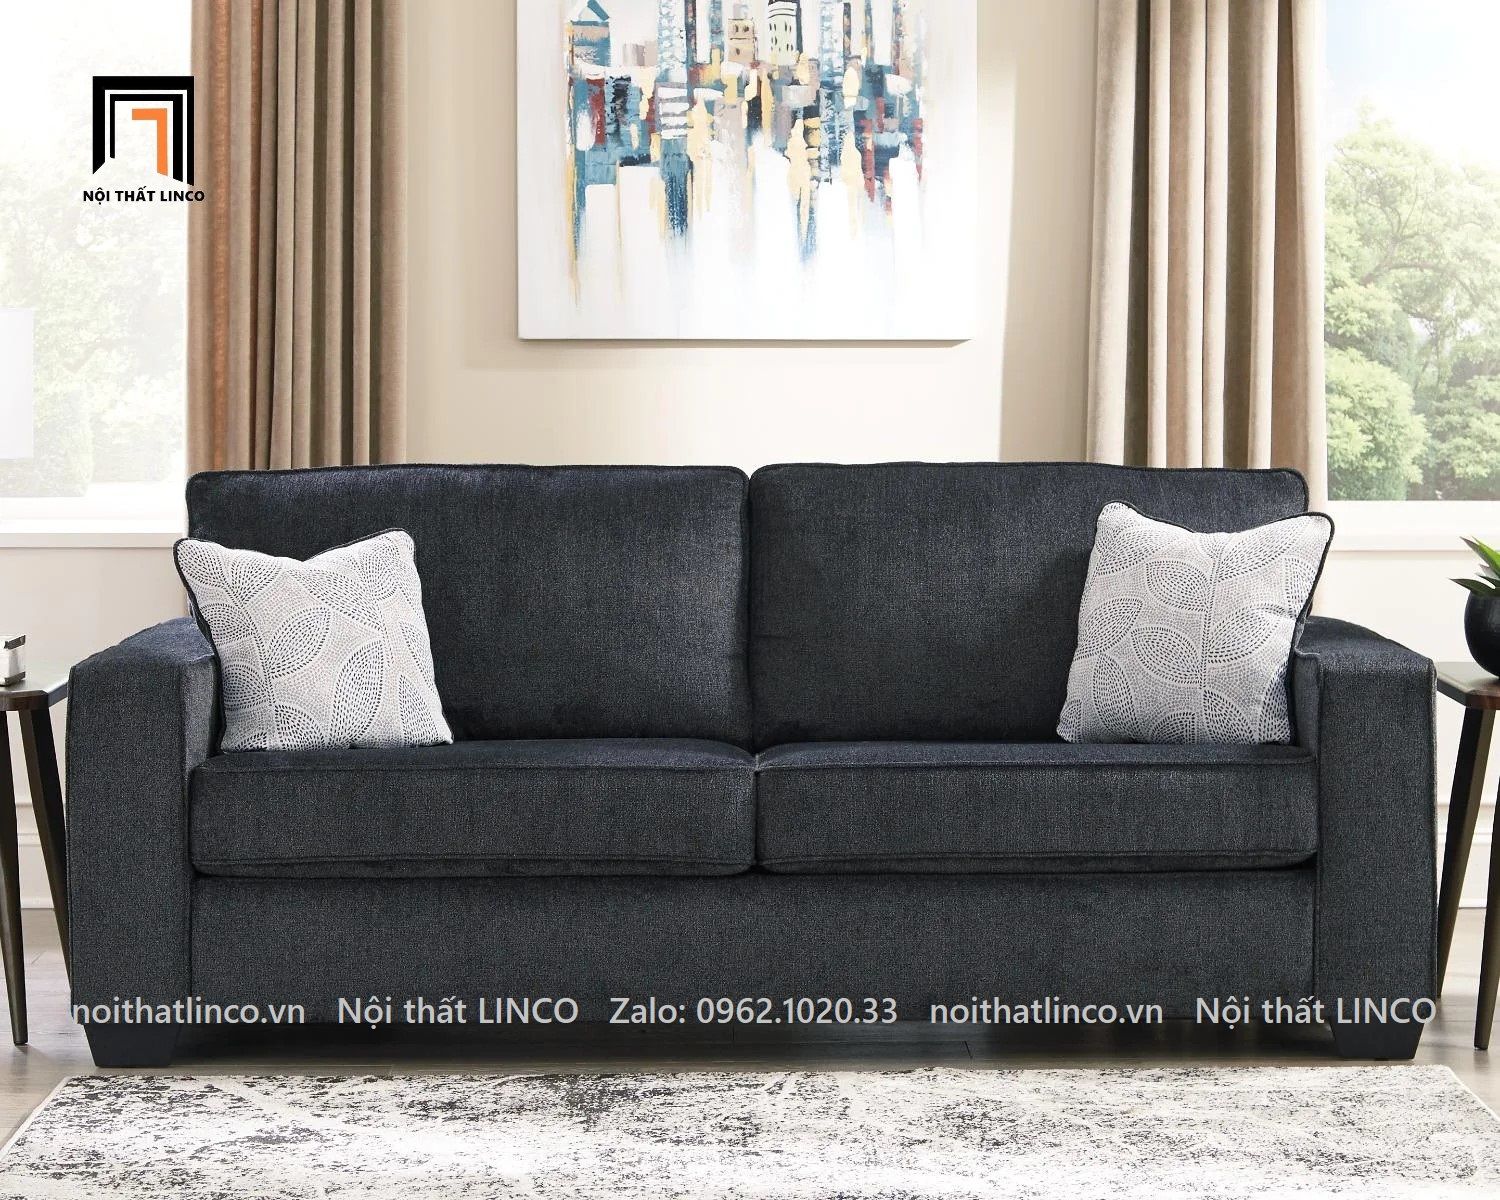  Ghế sofa băng thư giãn BT38-Rima dài 1m9 màu xám đen 